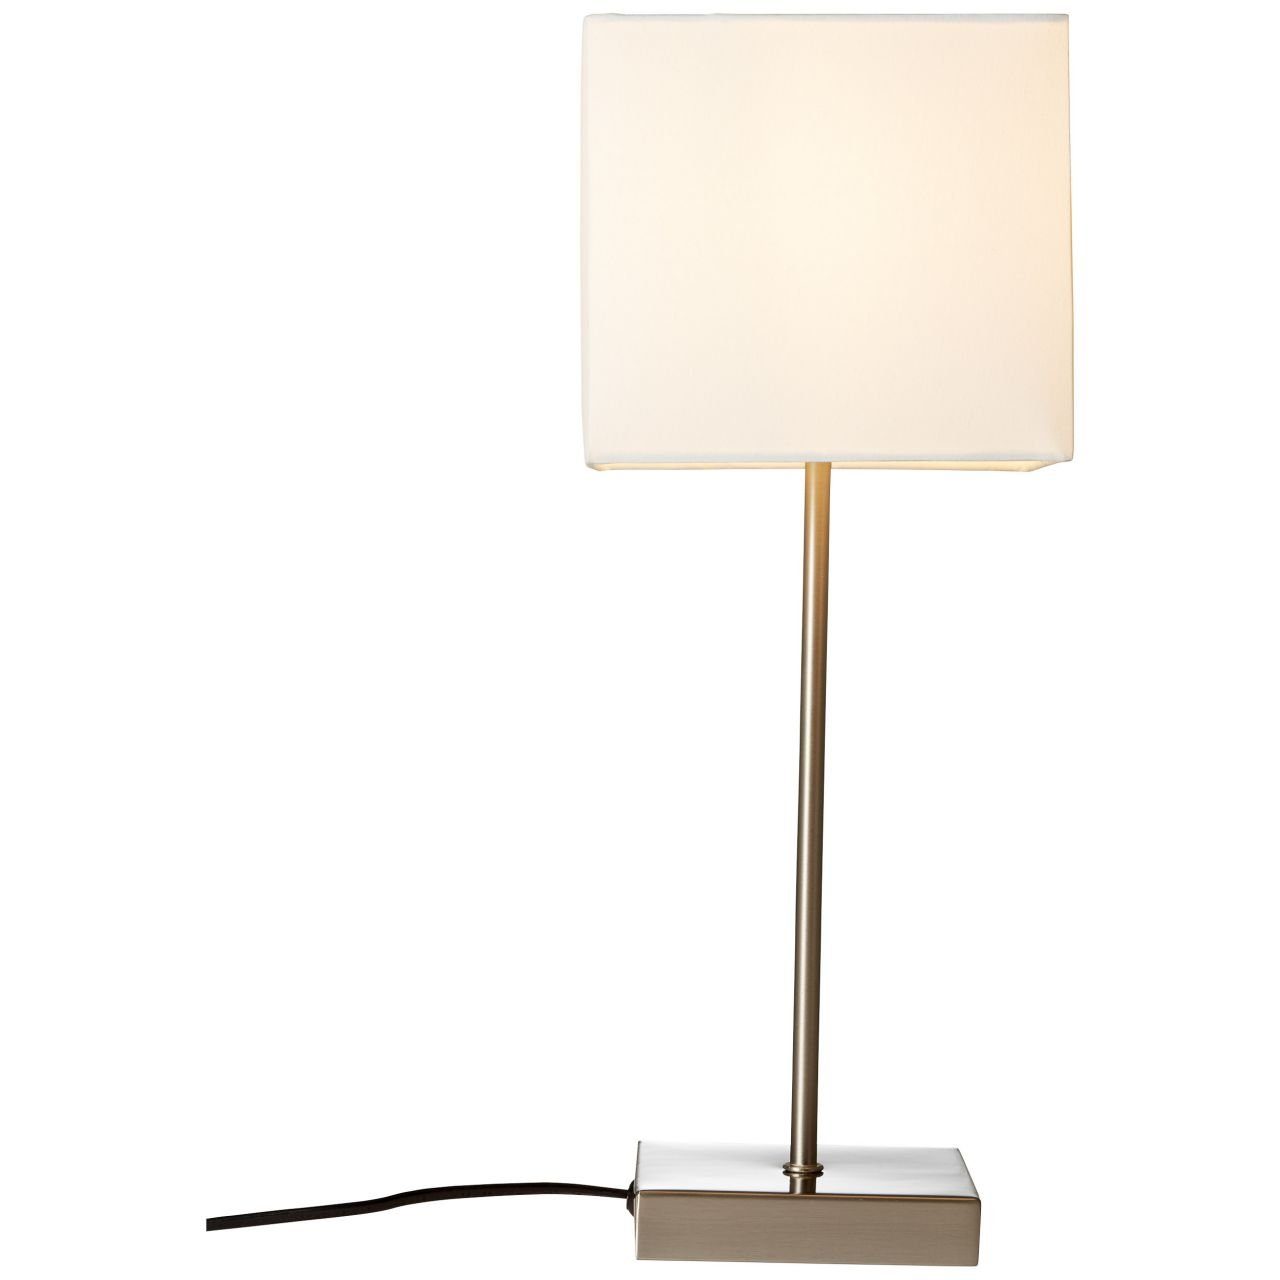 Tischleuchte Lampe 1x D45, 40W, geeign Tischleuchte Touchschalter E14, Aglae, Brilliant Aglae weiß